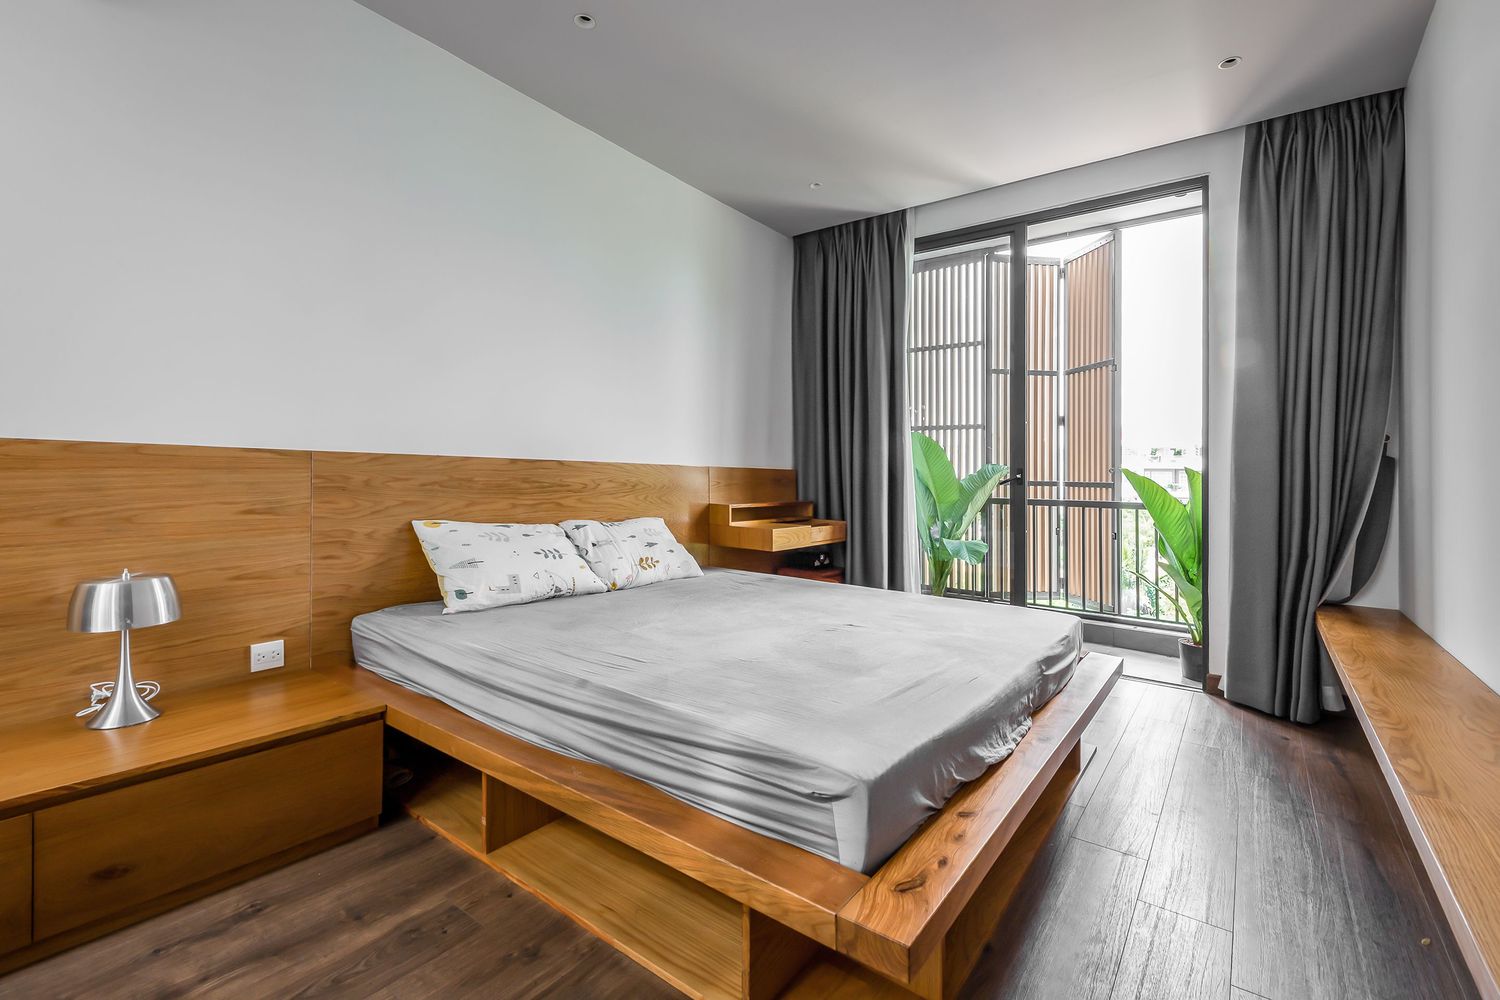 hình ảnh phòng ngủ nhà phố thoáng sáng với tường ốp gỗ màu sáng, cửa kính mở ra khoảng thông tầng